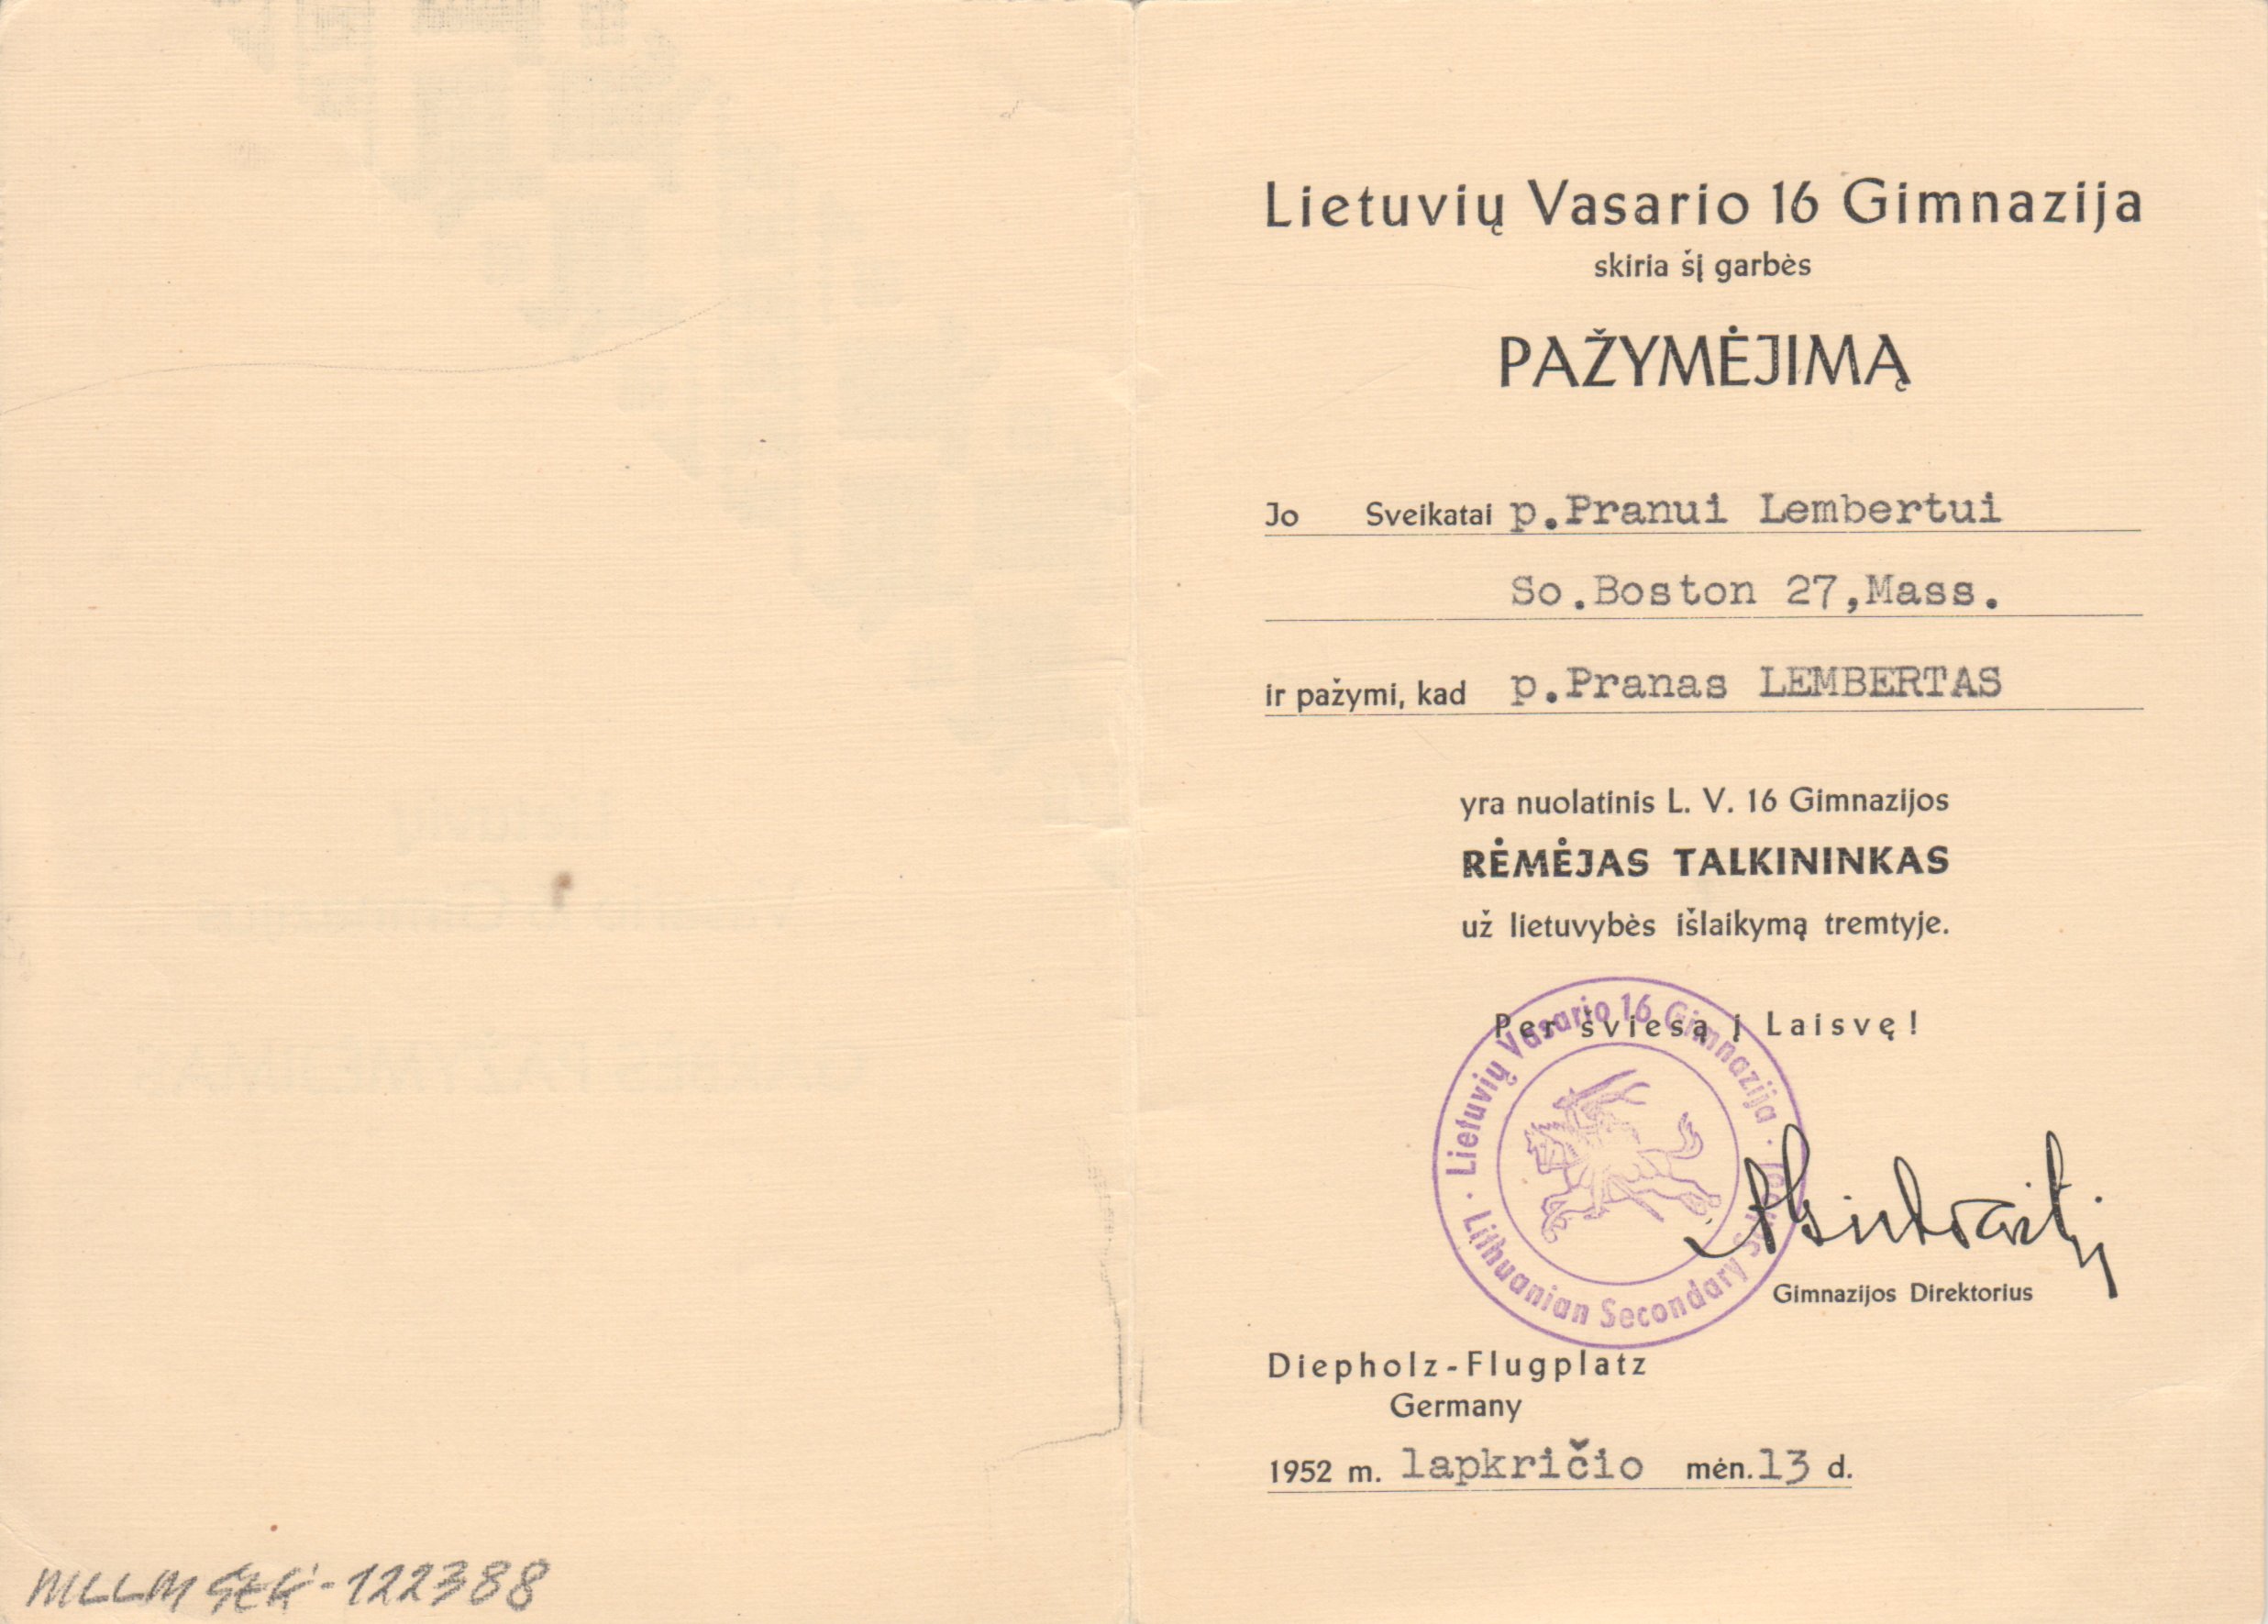 Lietuvių Vasario 16 Gimnazijos garbės pažymėjimas, išduotas P. Lembertui. 1952 m.